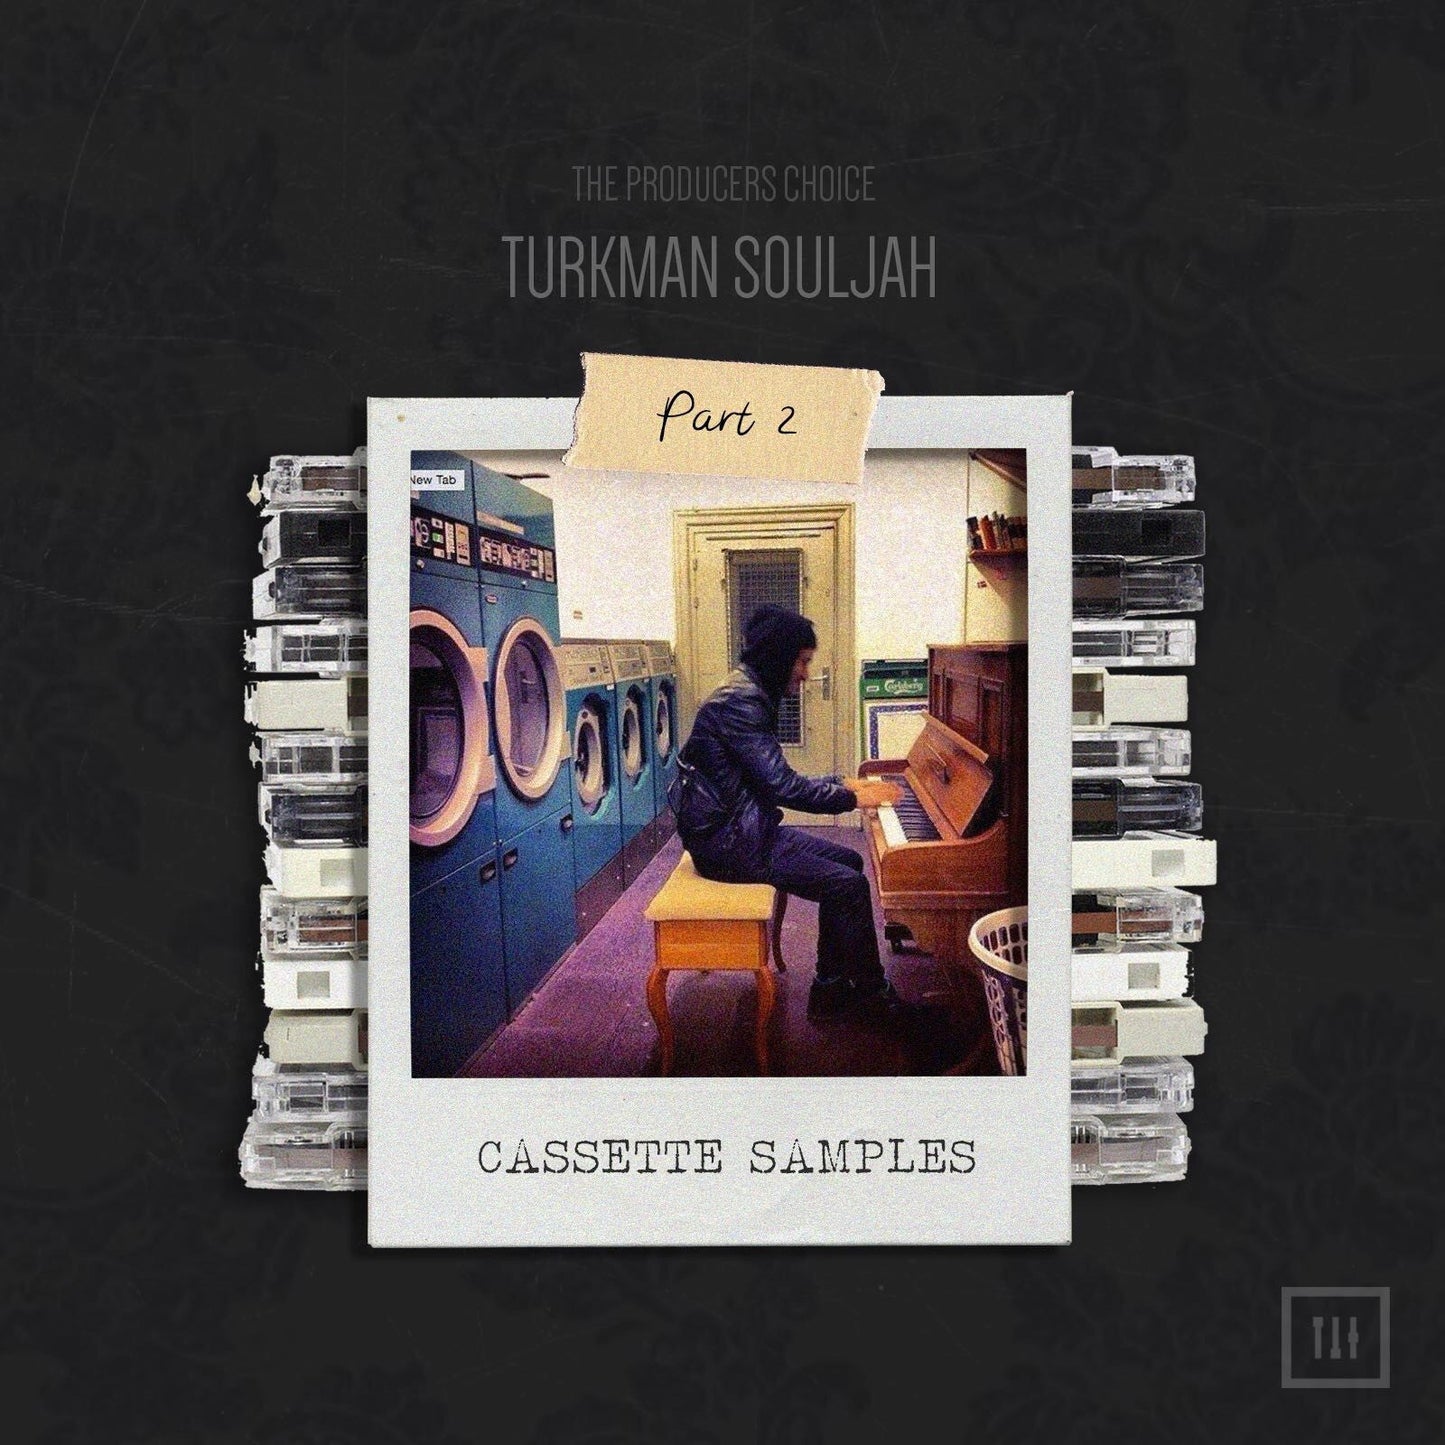 Cassette Samples Vol 2 by Turkman Souljah - Producers Choice